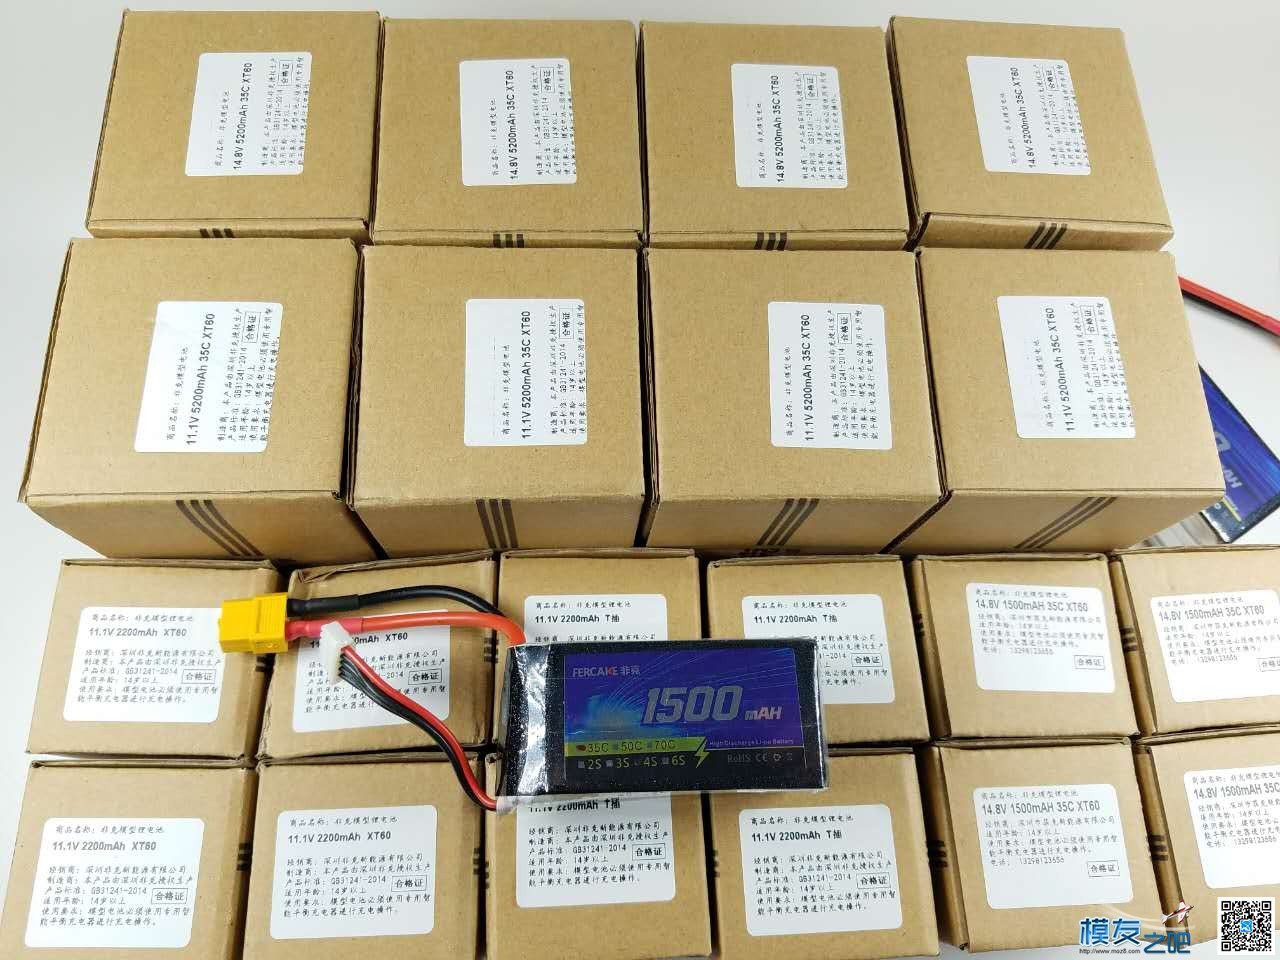 非克电池测试体验活动 电池,非克汽车02,taobao 作者:飞天狼 3825 